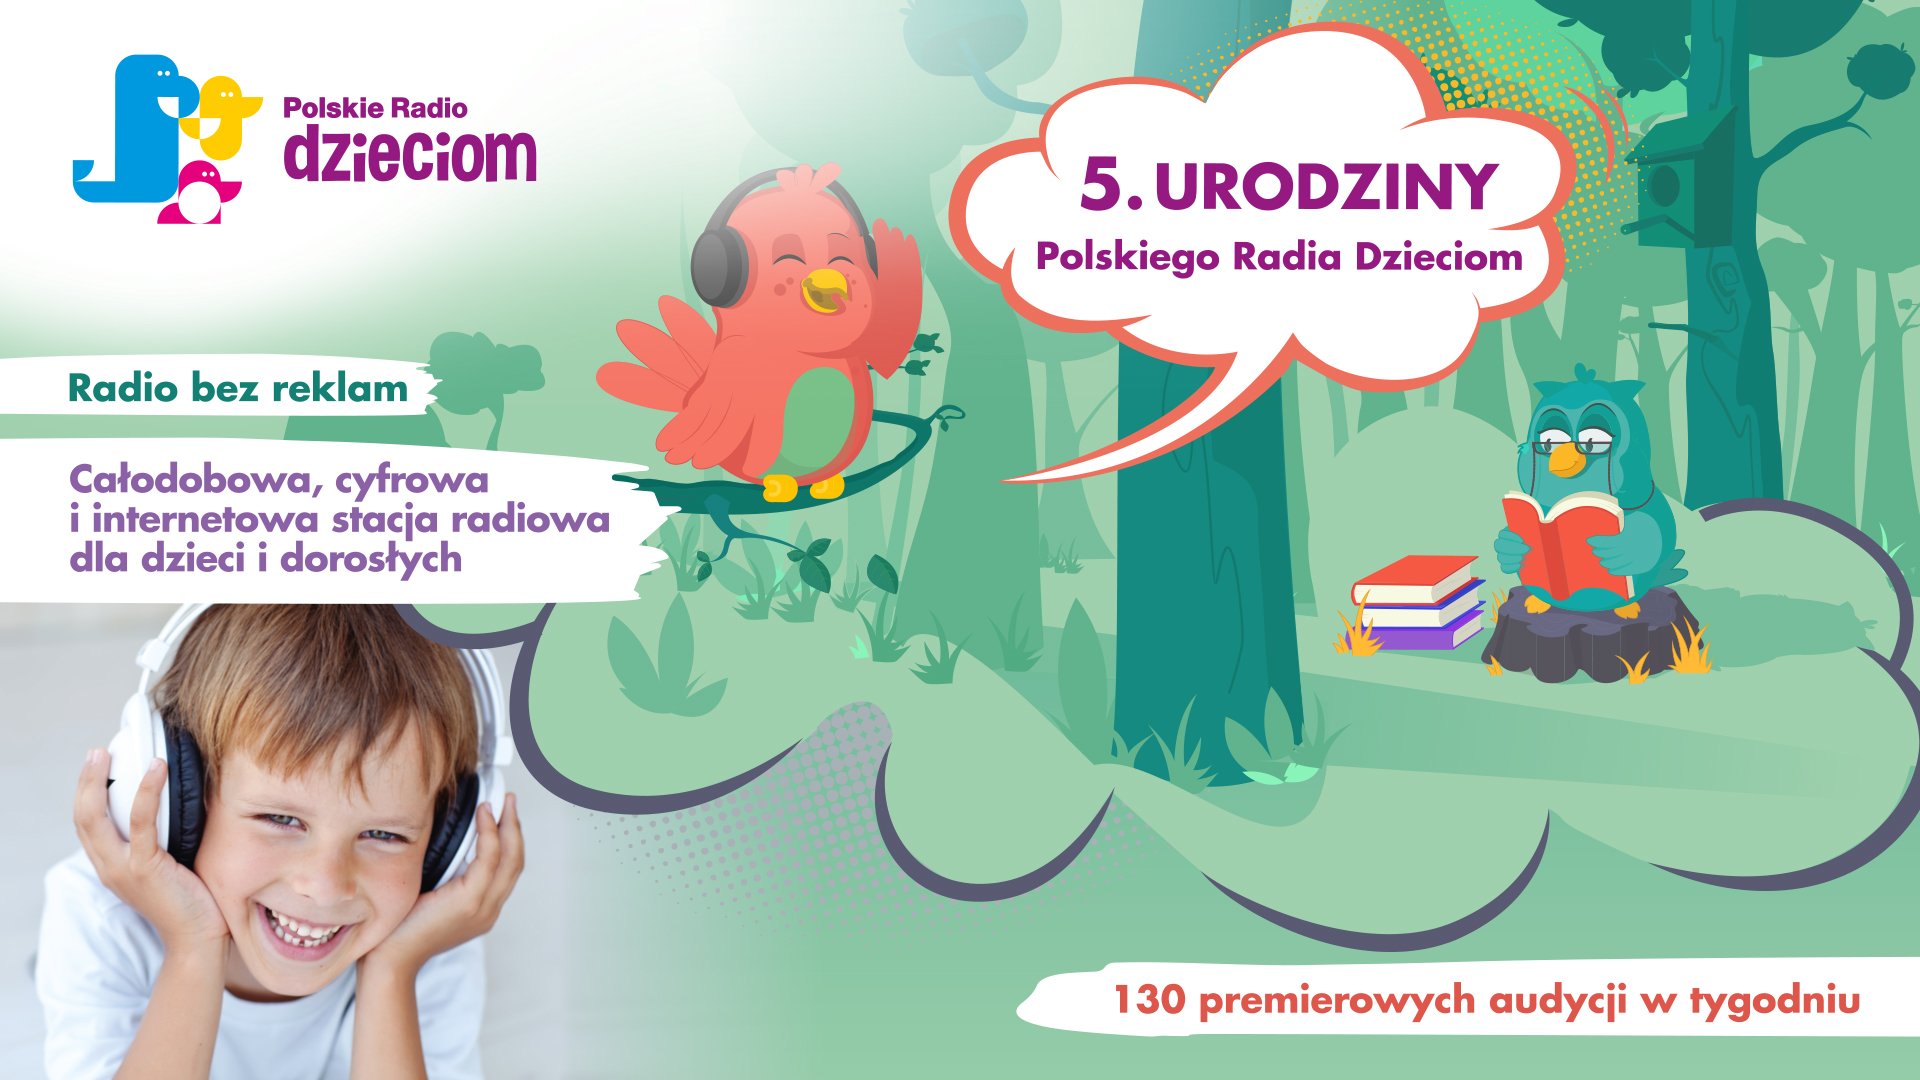 Www Polskie Radio Dzieciom Pl 5 dni pełnych atrakcji na 5. urodziny Polskiego Radia Dzieciom